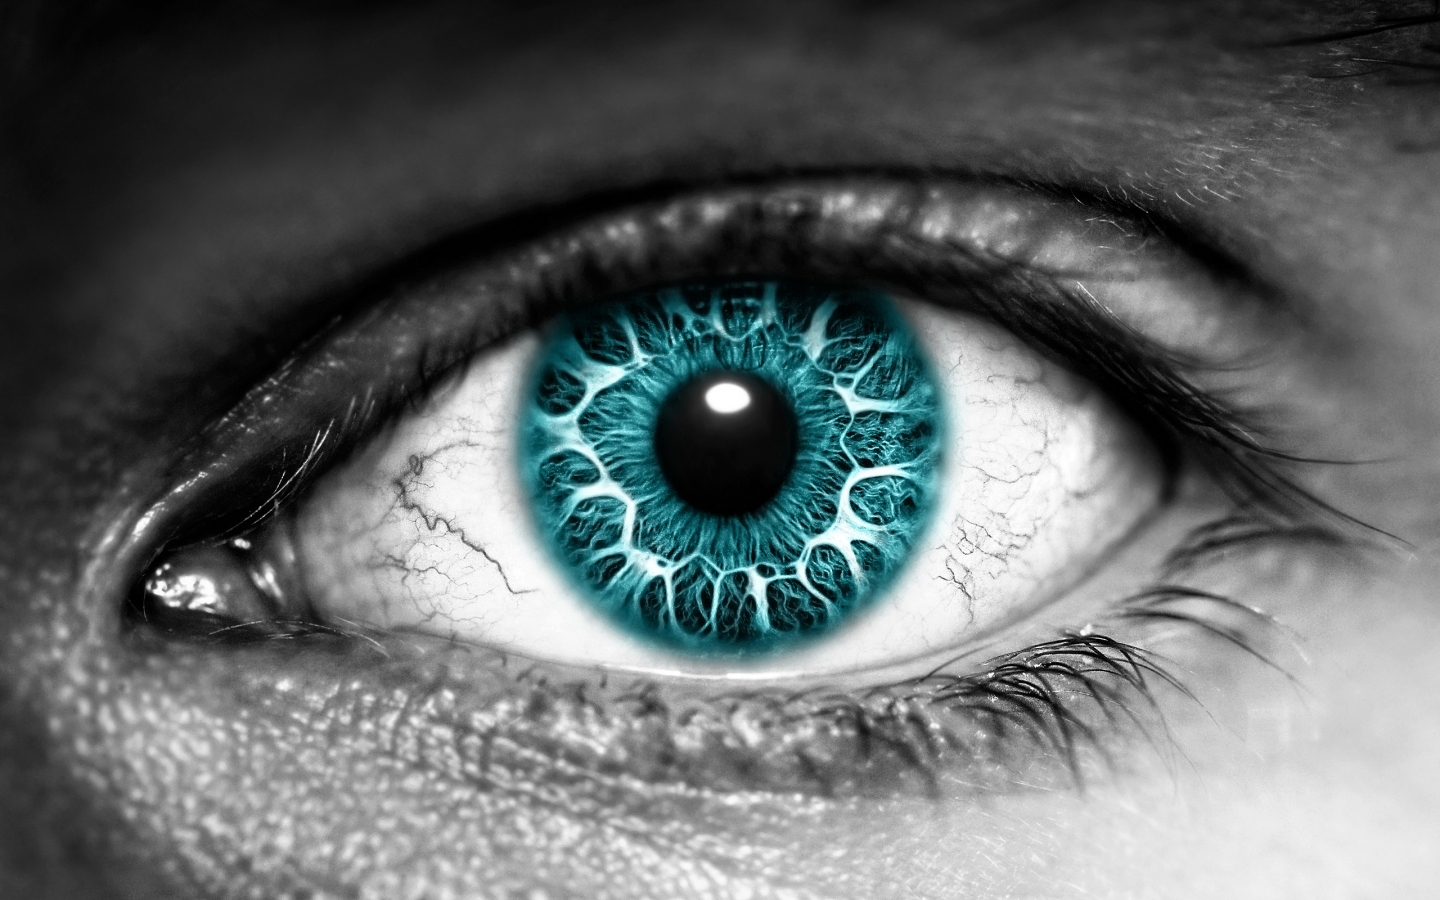 Azure Eye for 1440 x 900 widescreen resolution